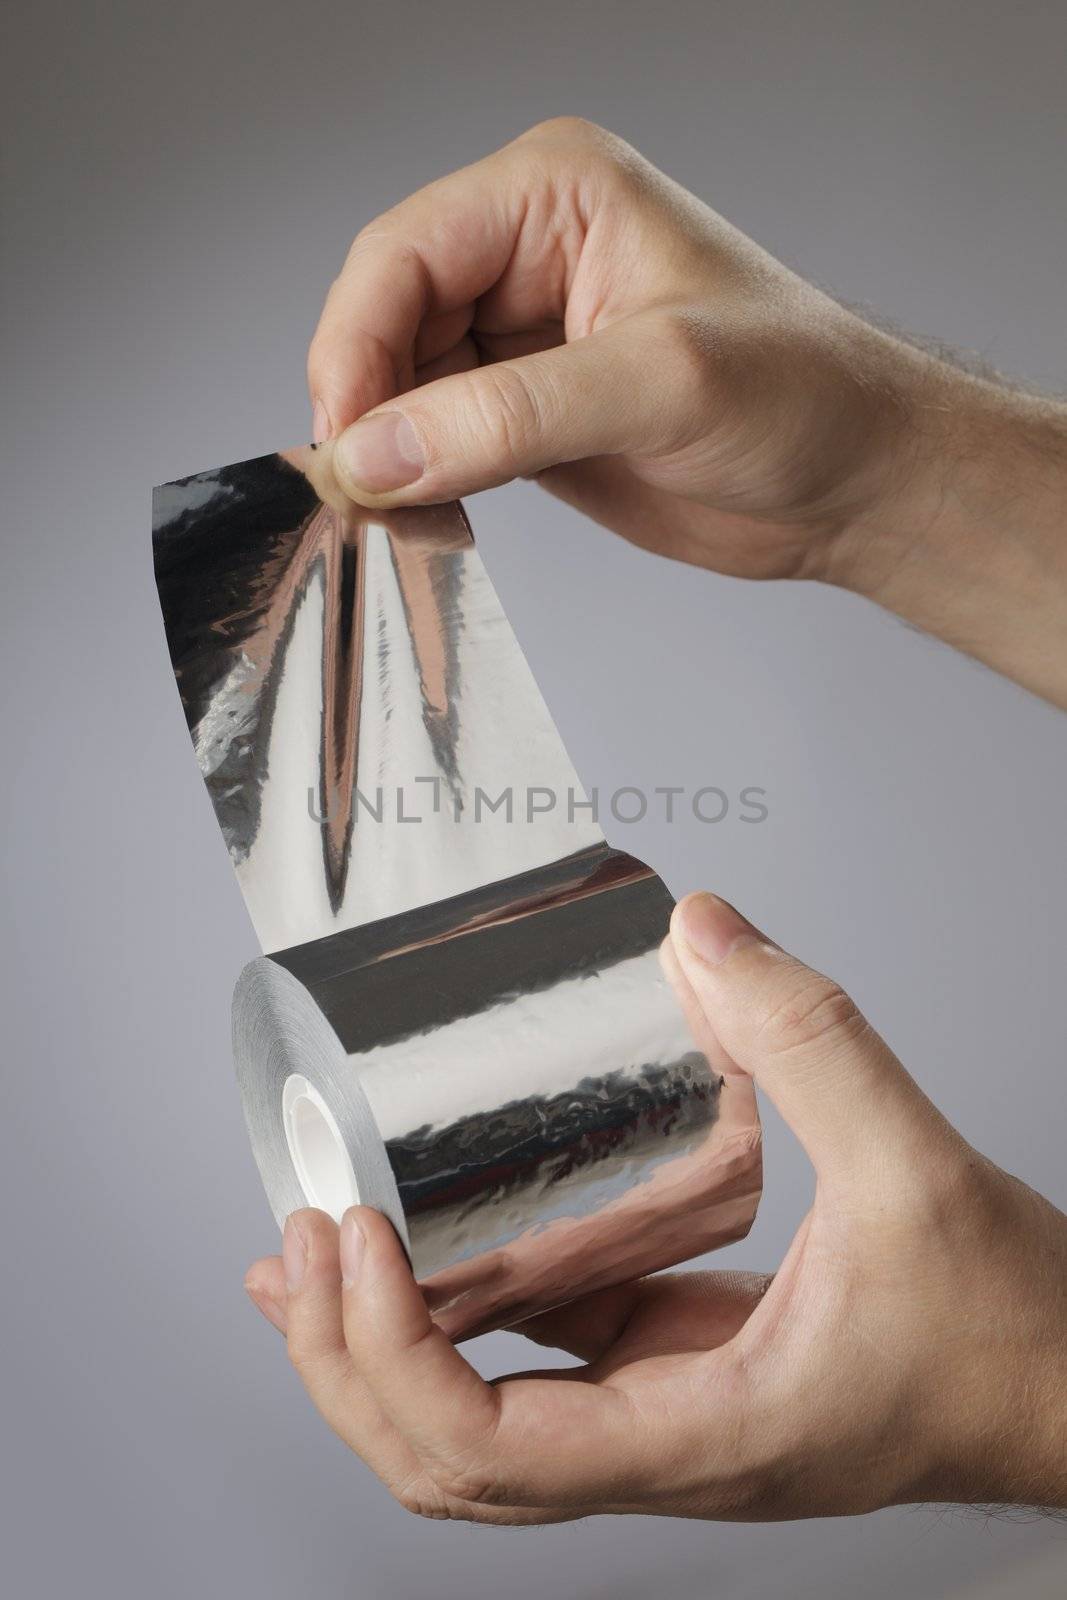 Aluminum foil tape by Stocksnapper